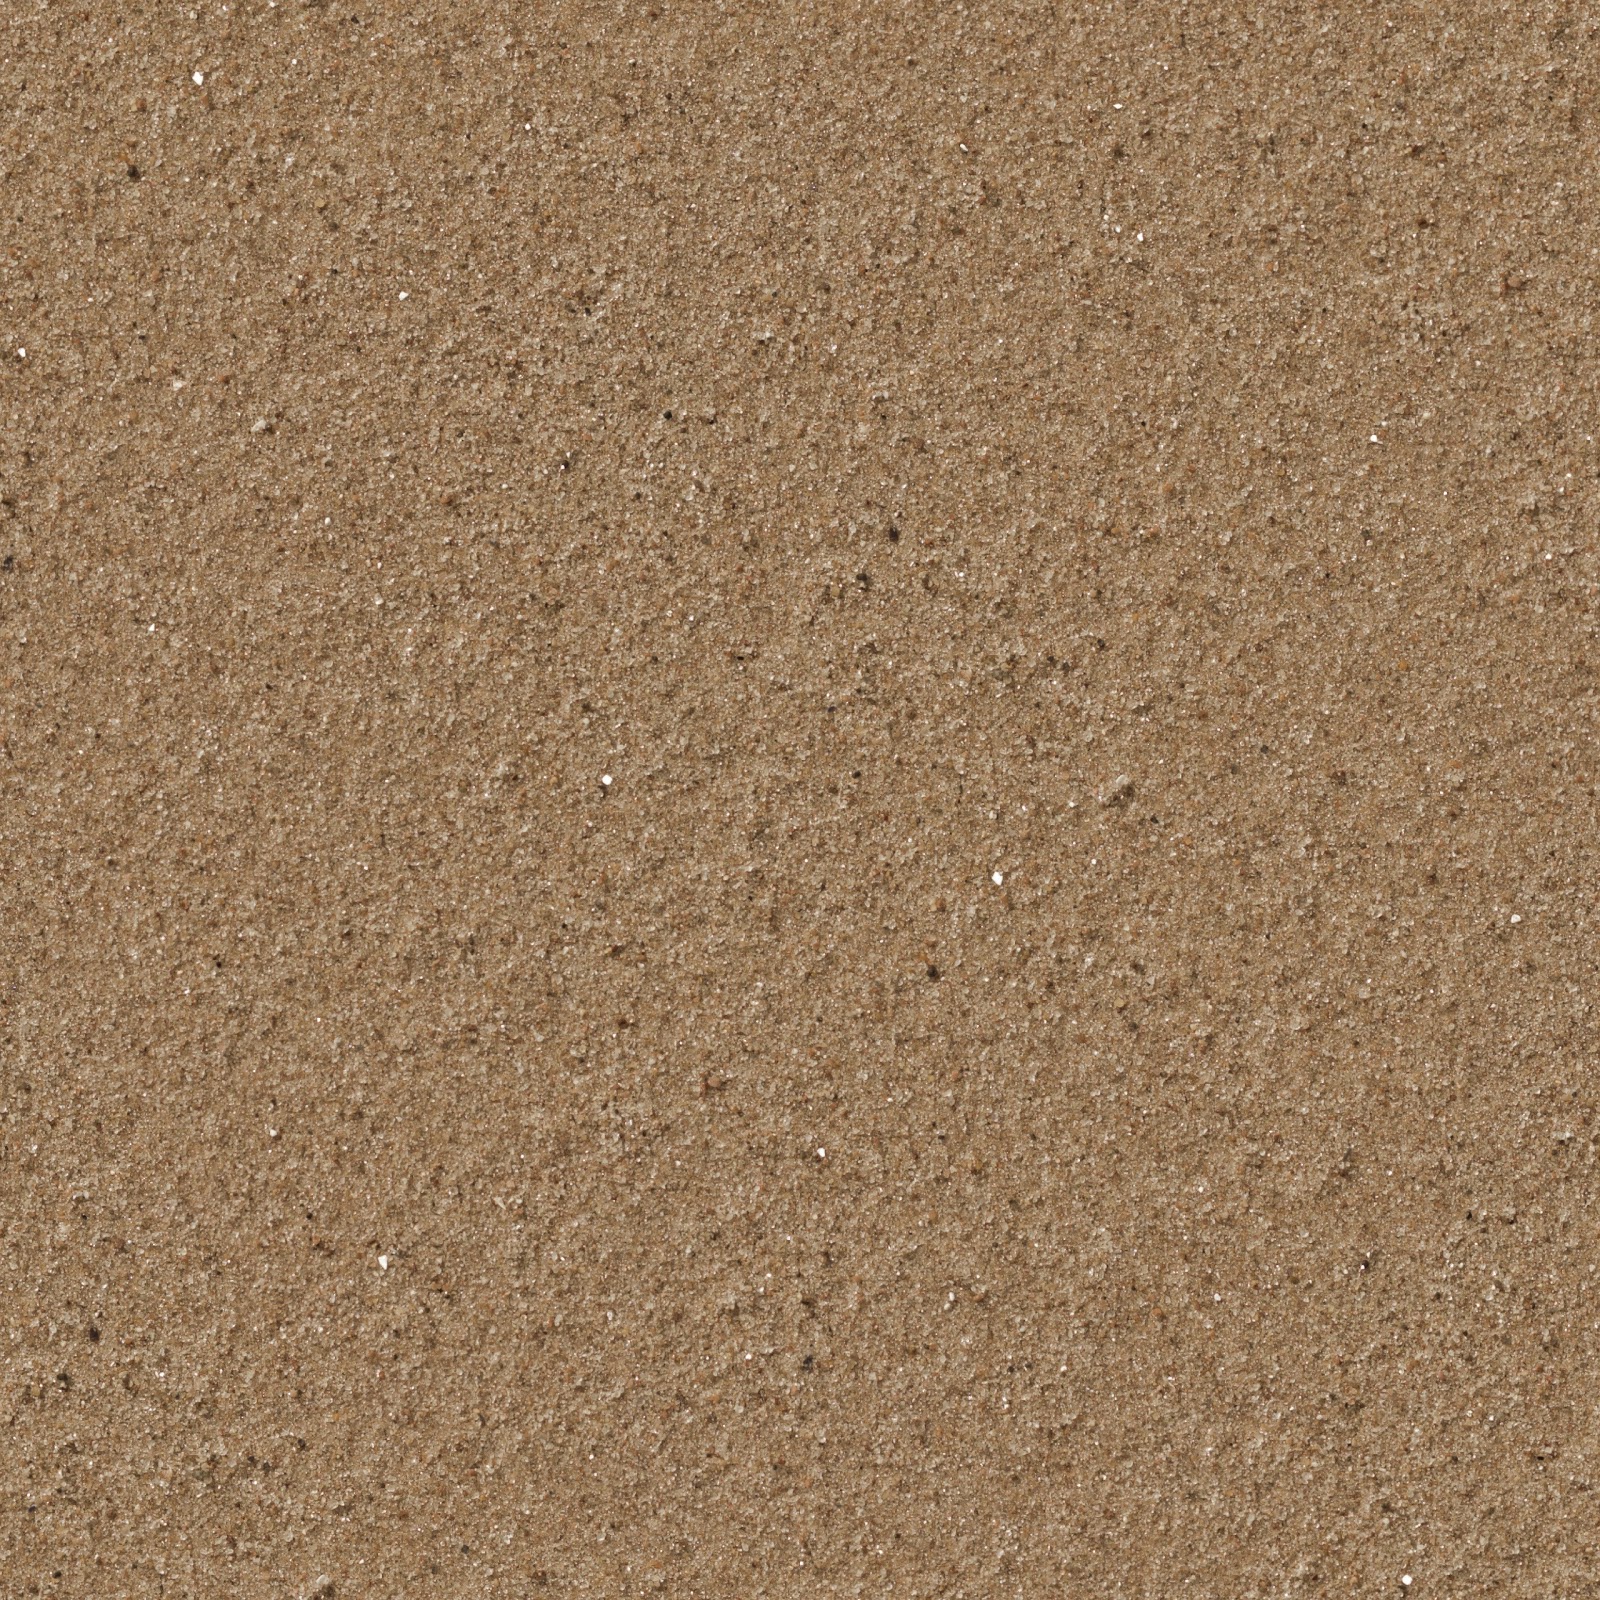 Seamless sand beach soil texture 2048x2048